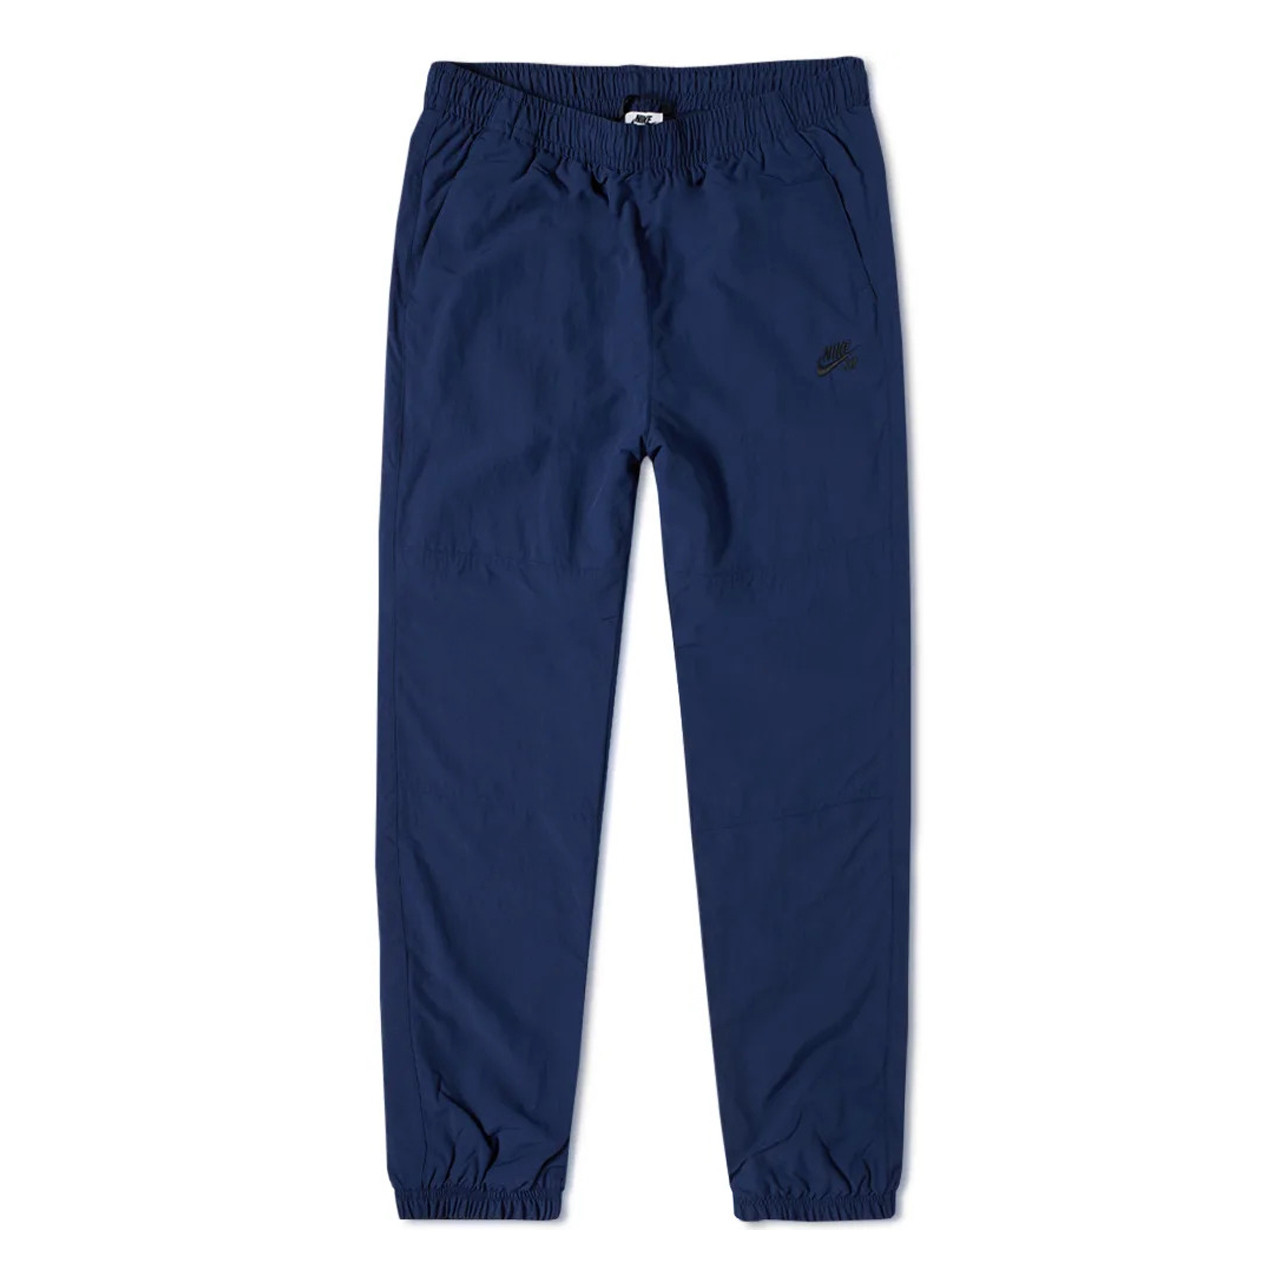 Track pants - Navy blue - Men | H&M SG